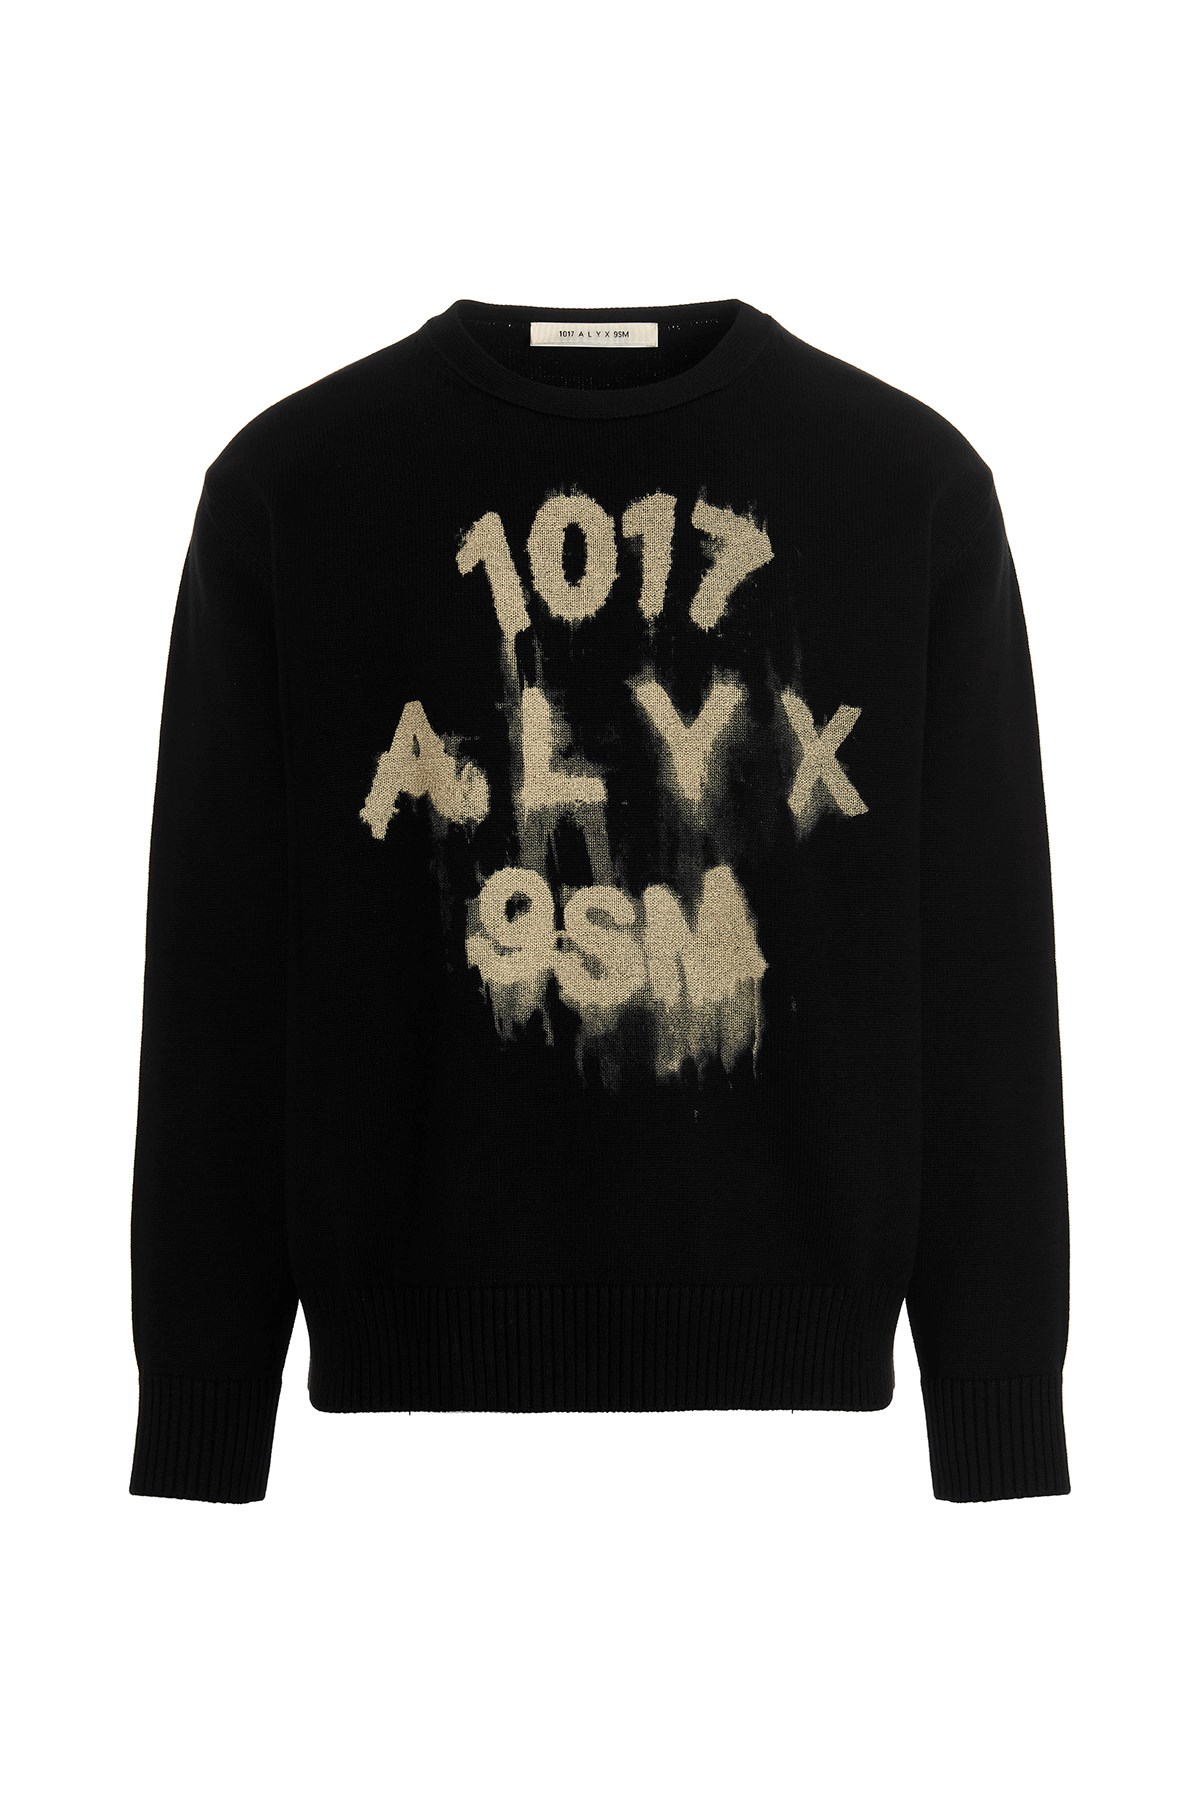 1017-ALYX-9SM Pullover Mit Logo